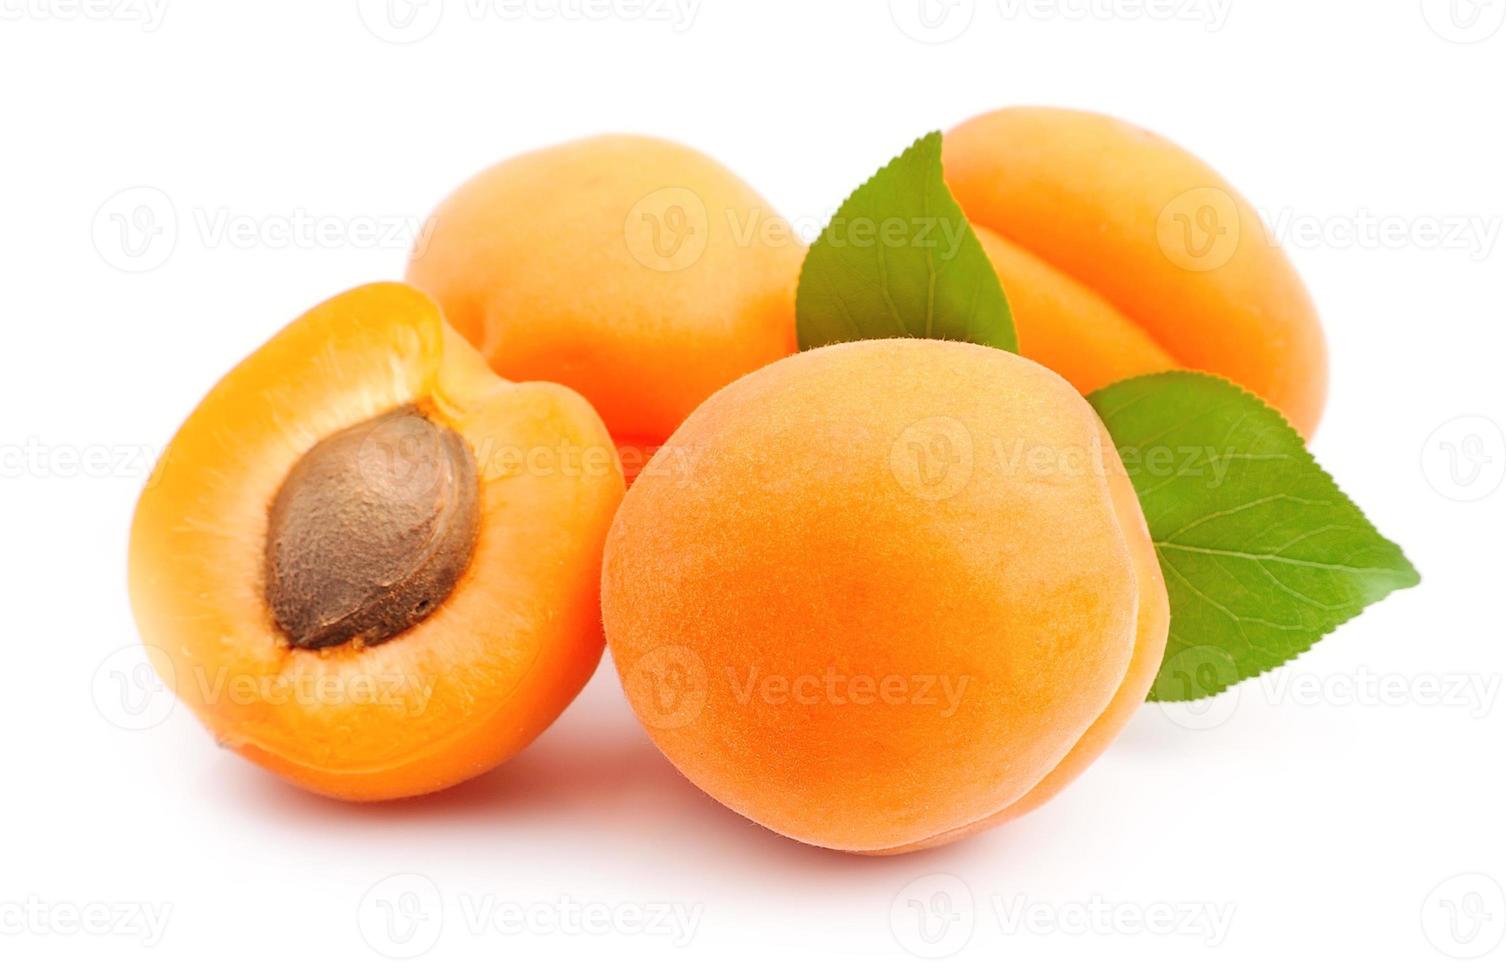 ljuv aprikoser frukt foto